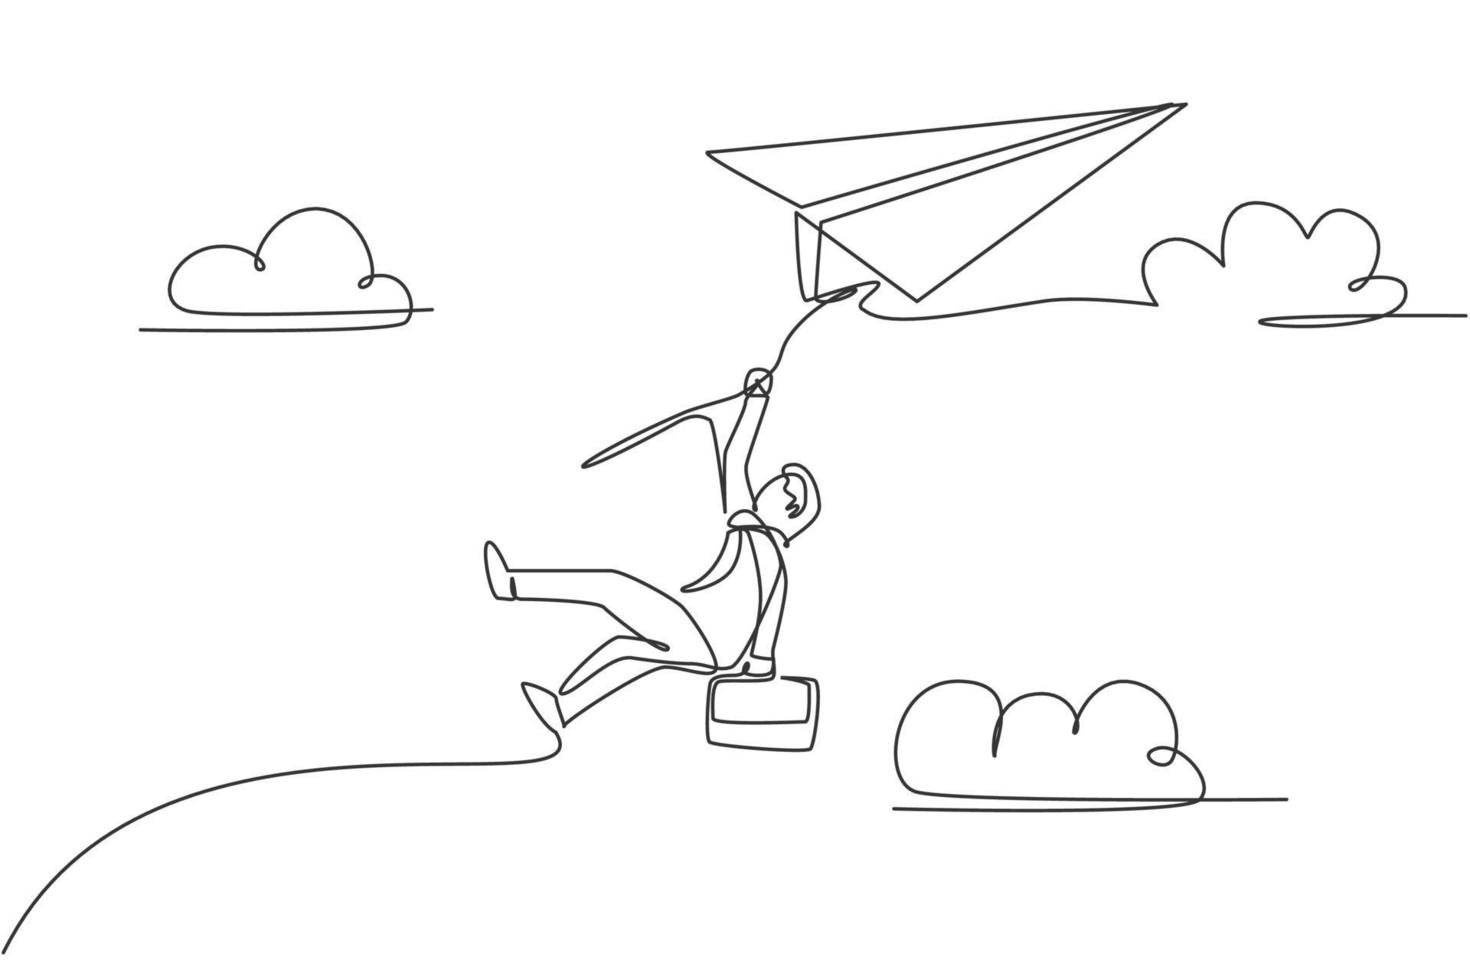 dibujo continuo de una línea de un joven trabajador colgando de un avión de papel volador. desafío empresarial, concepto de metáfora. Ilustración gráfica de vector de diseño de dibujo de línea única de moda minimalista